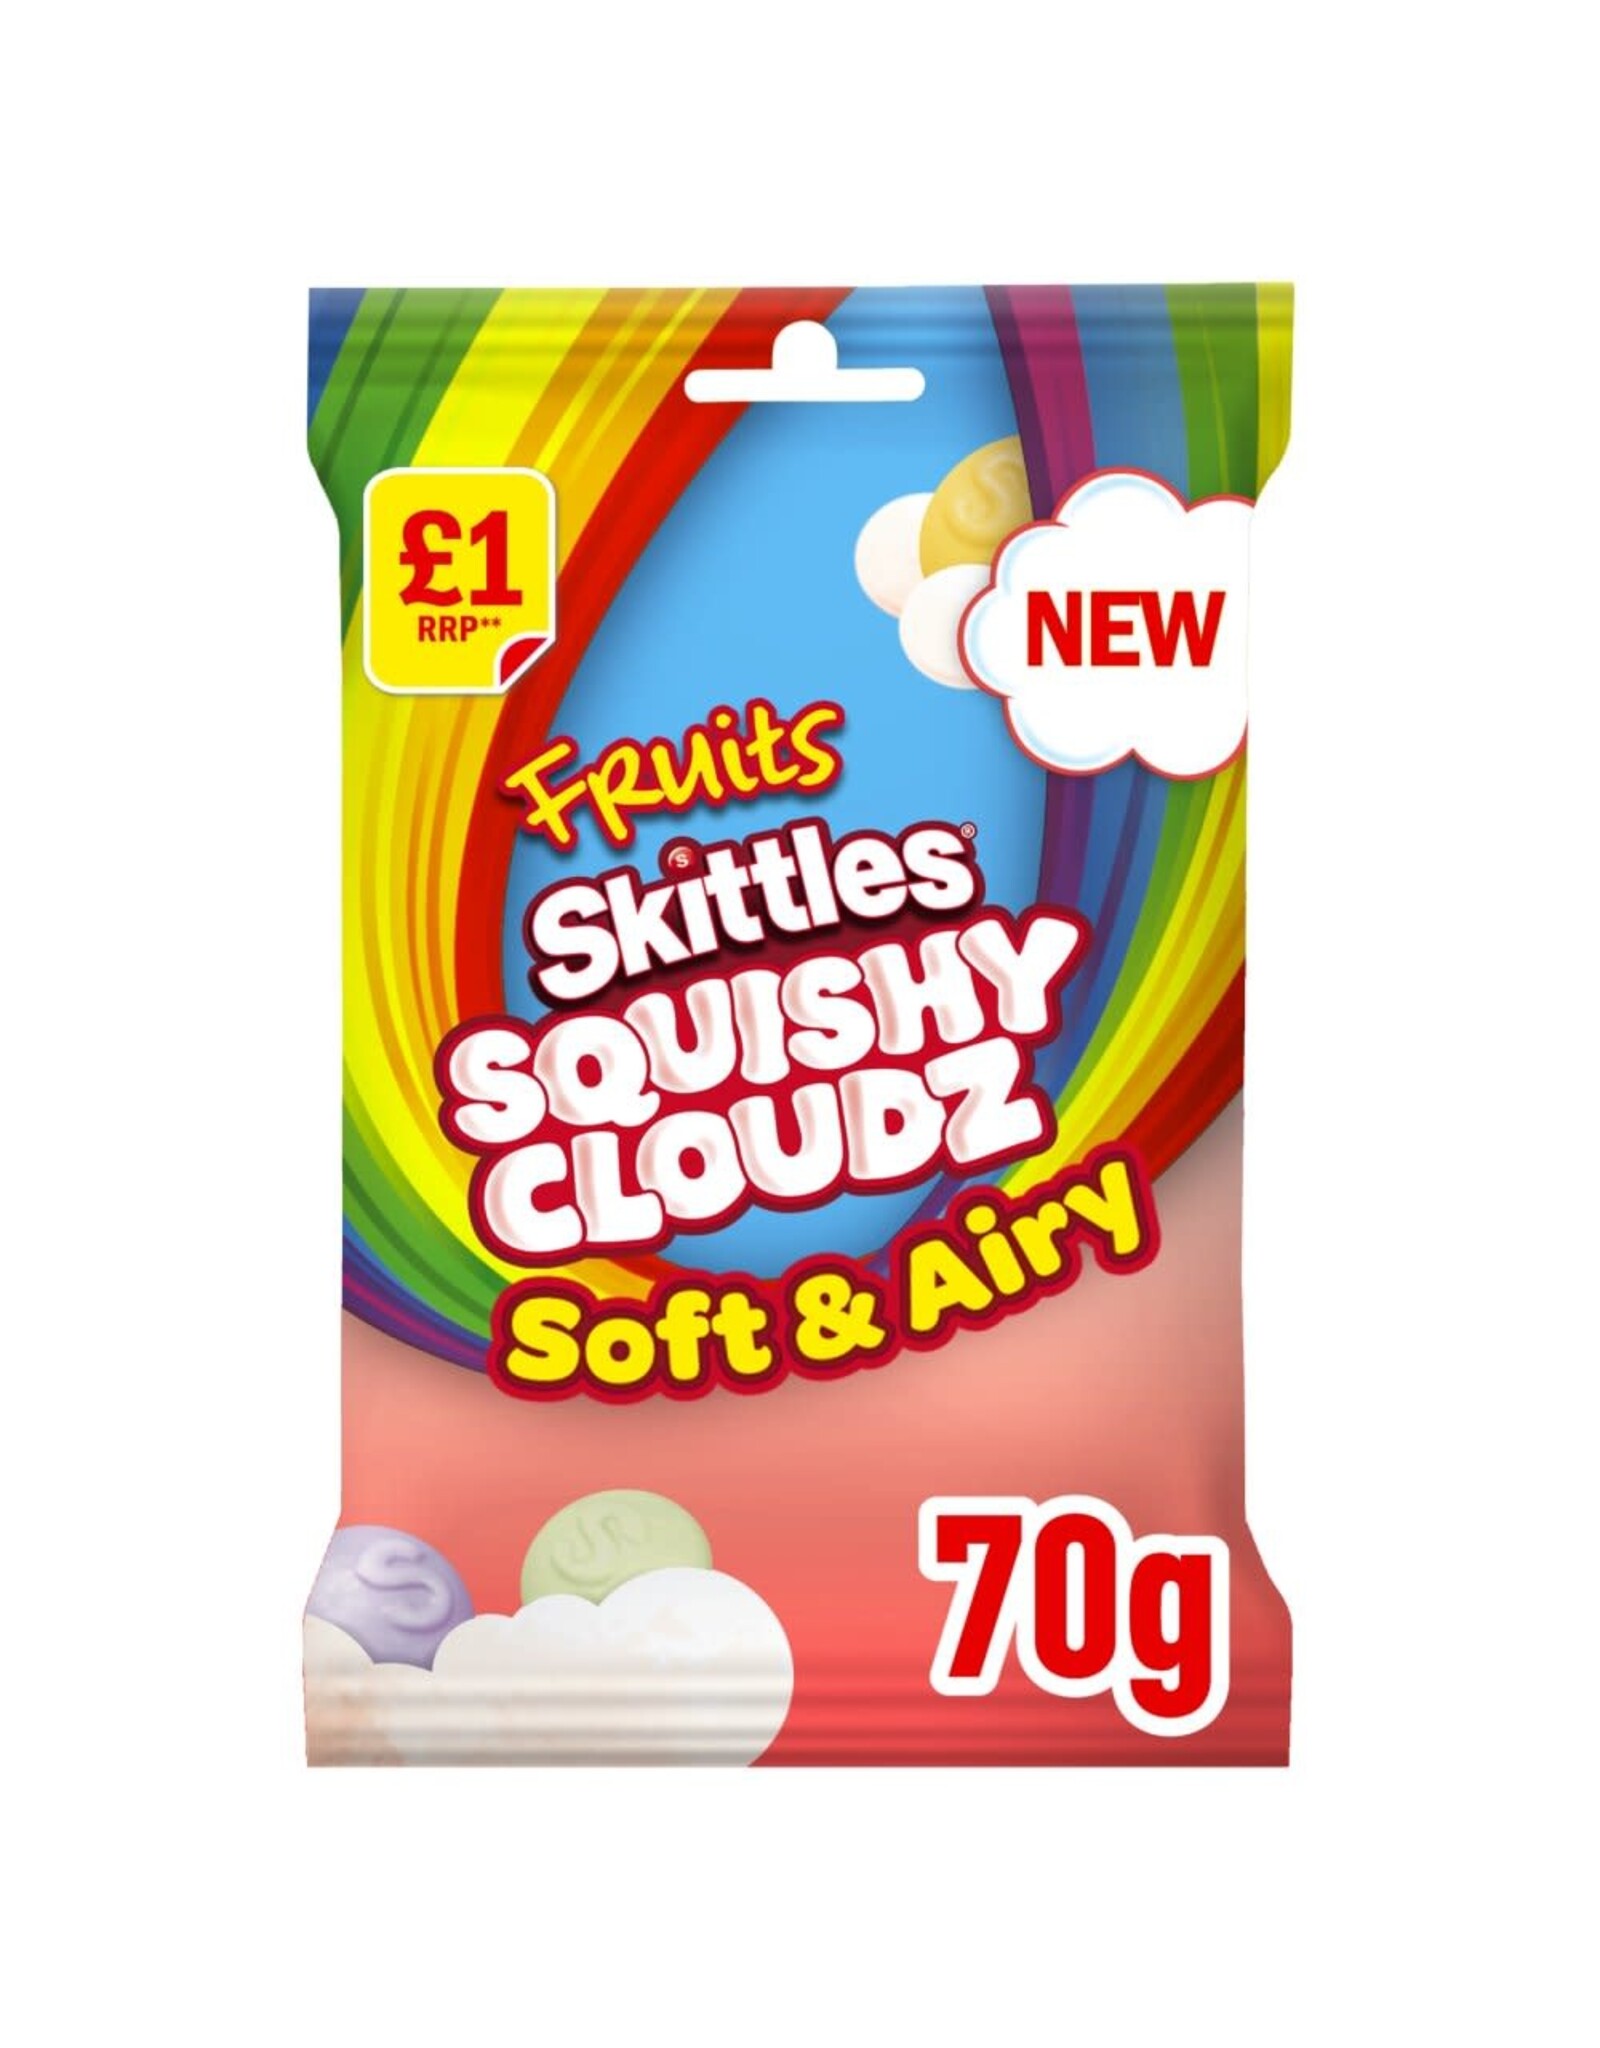 Skittles Squishy Cloudz Fruit Sweets (British)